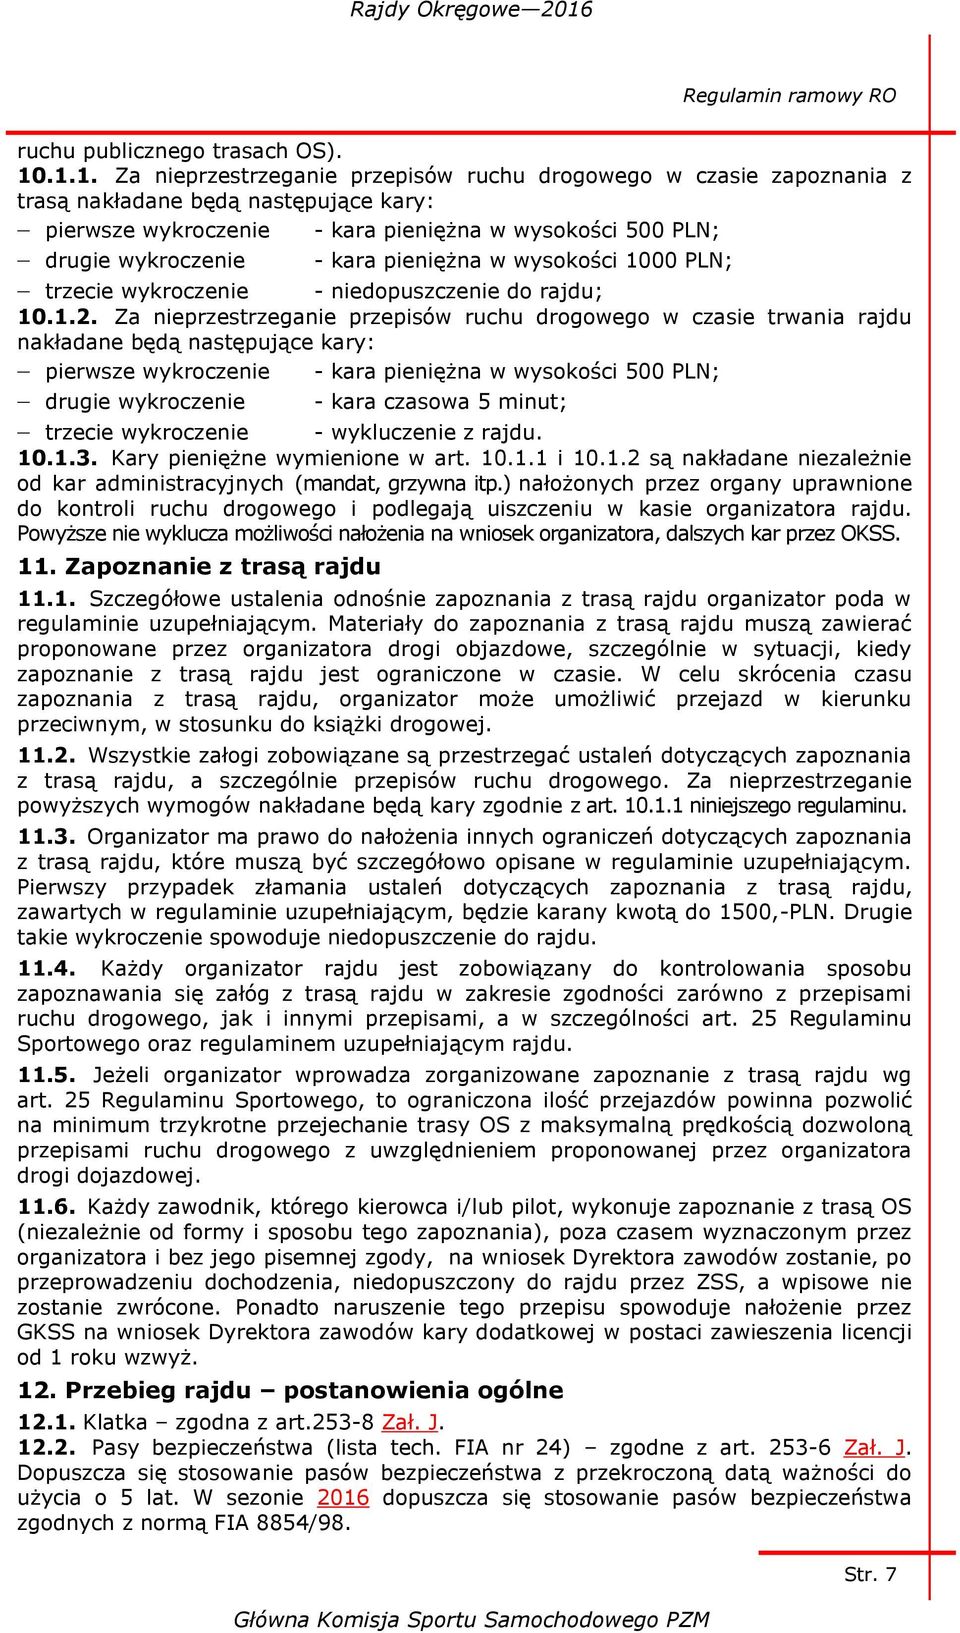 pieniężna w wysokości 1000 PLN; trzecie wykroczenie - niedopuszczenie do rajdu; 10.1.2.